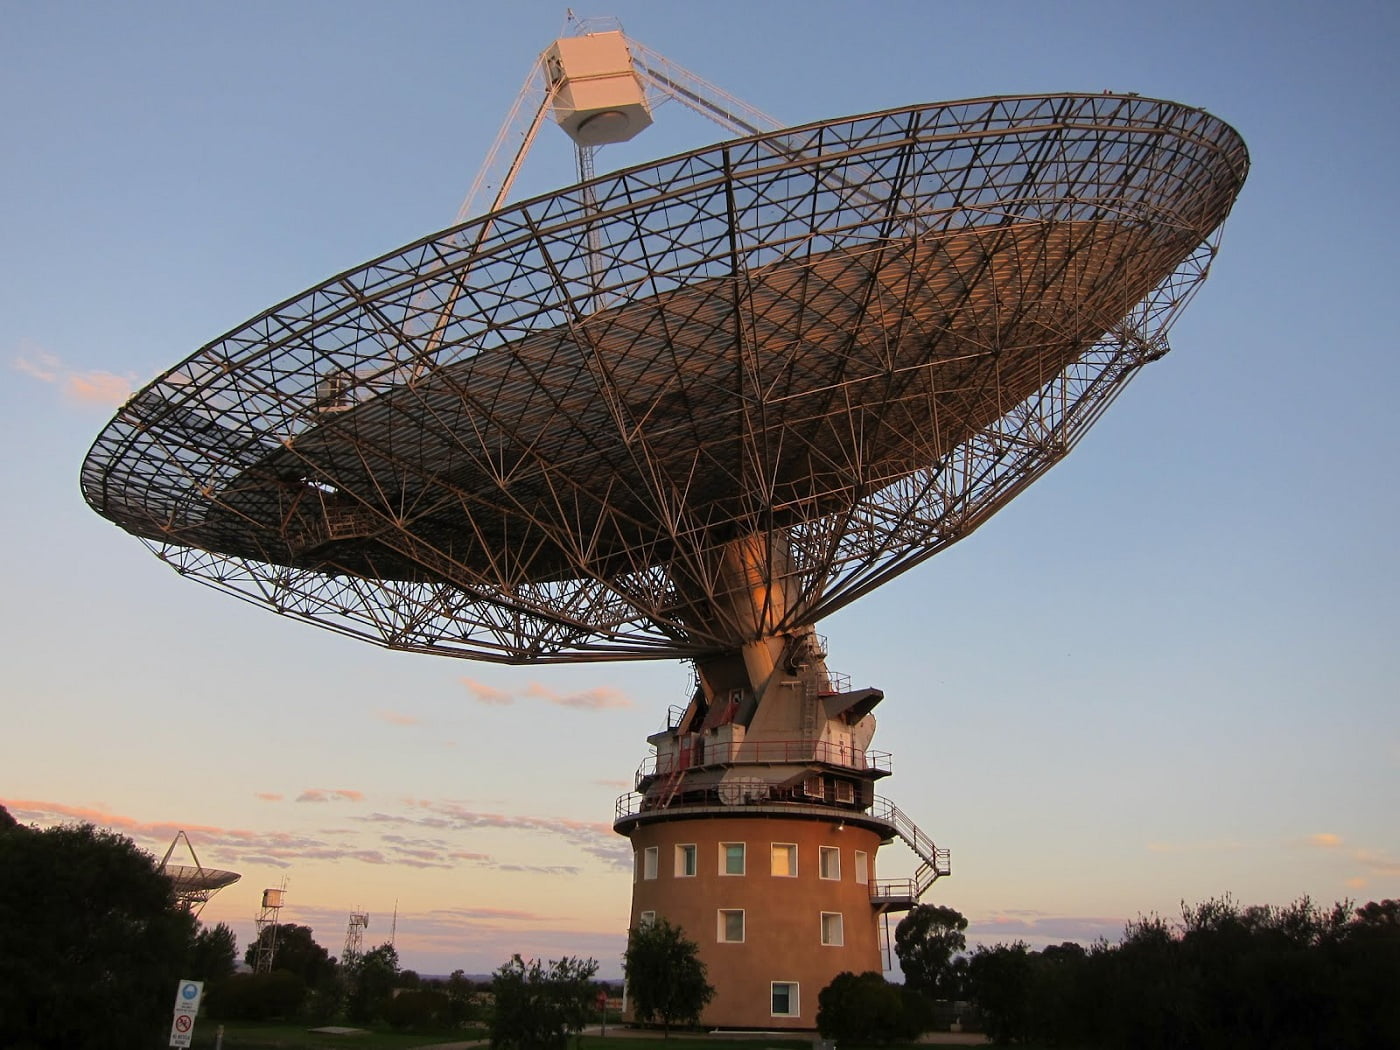 “The Dish” или Лунный заговор с австралийскими антеннами